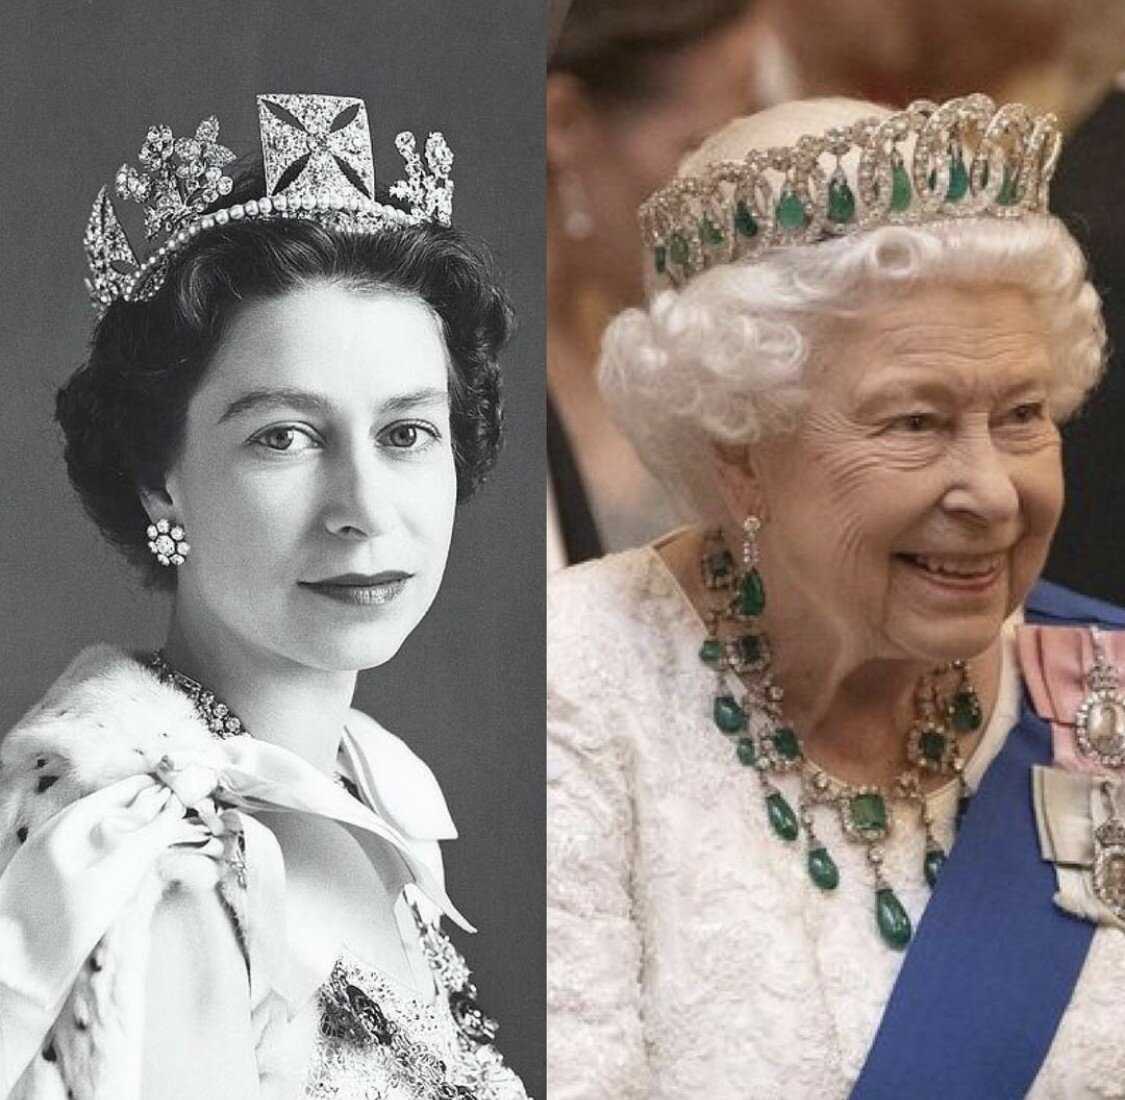 Елизавете II исполняется 95 лет В честь этой знаменательной даты мы собрали интересные факты о монархе-рекордсмене